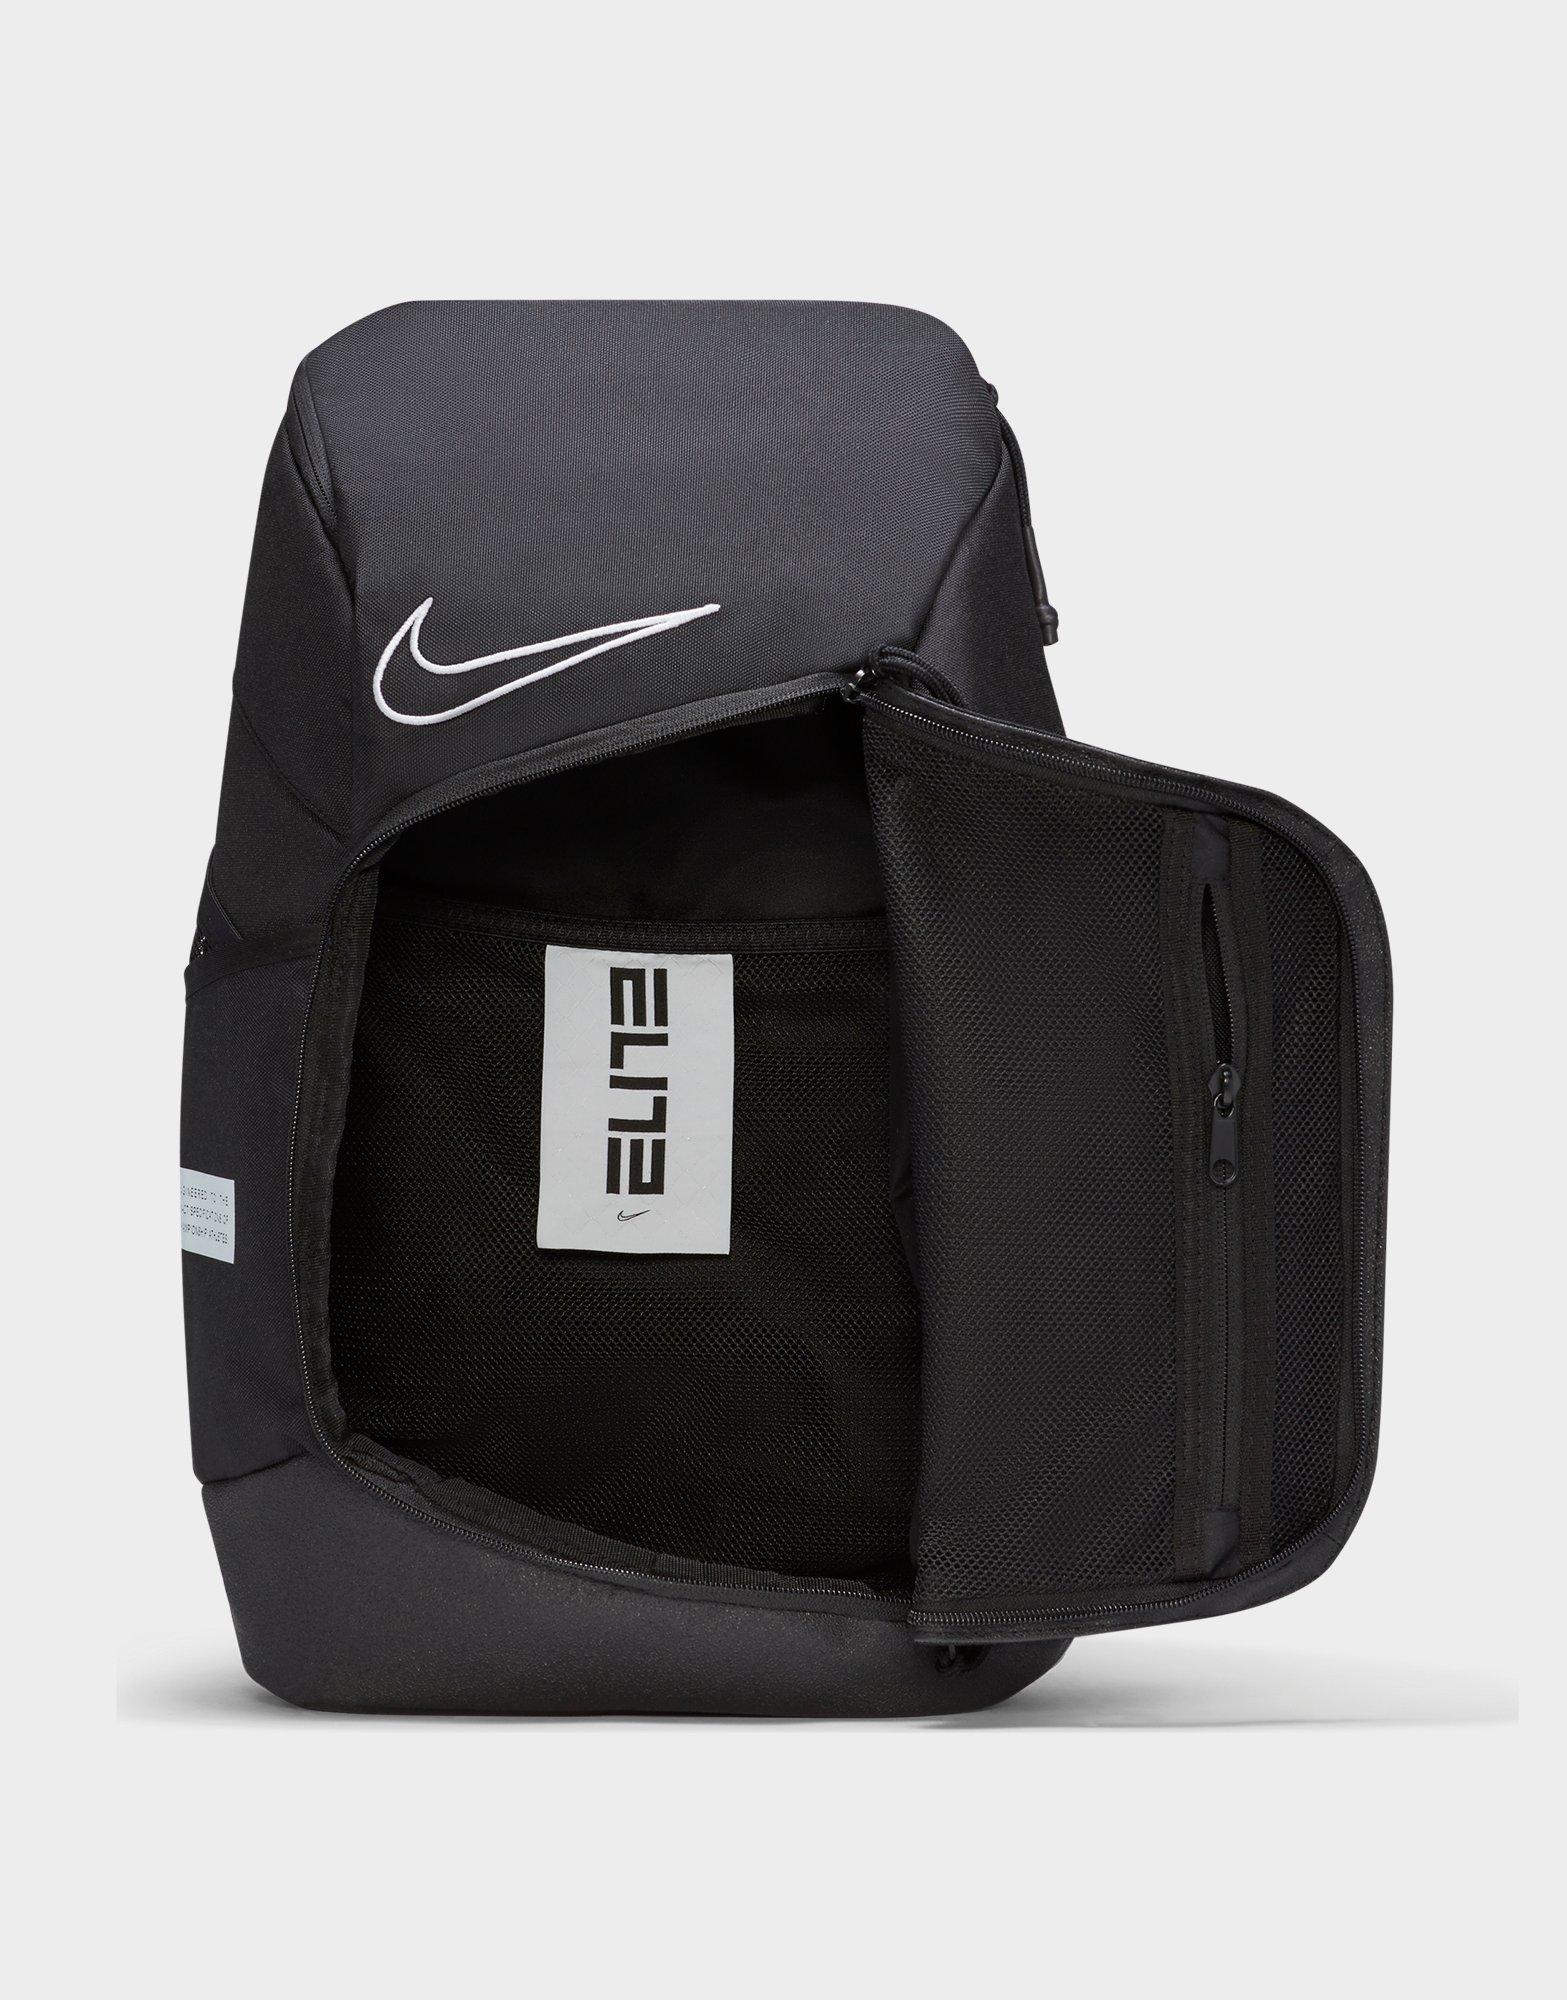 nike elite 2015 backpack